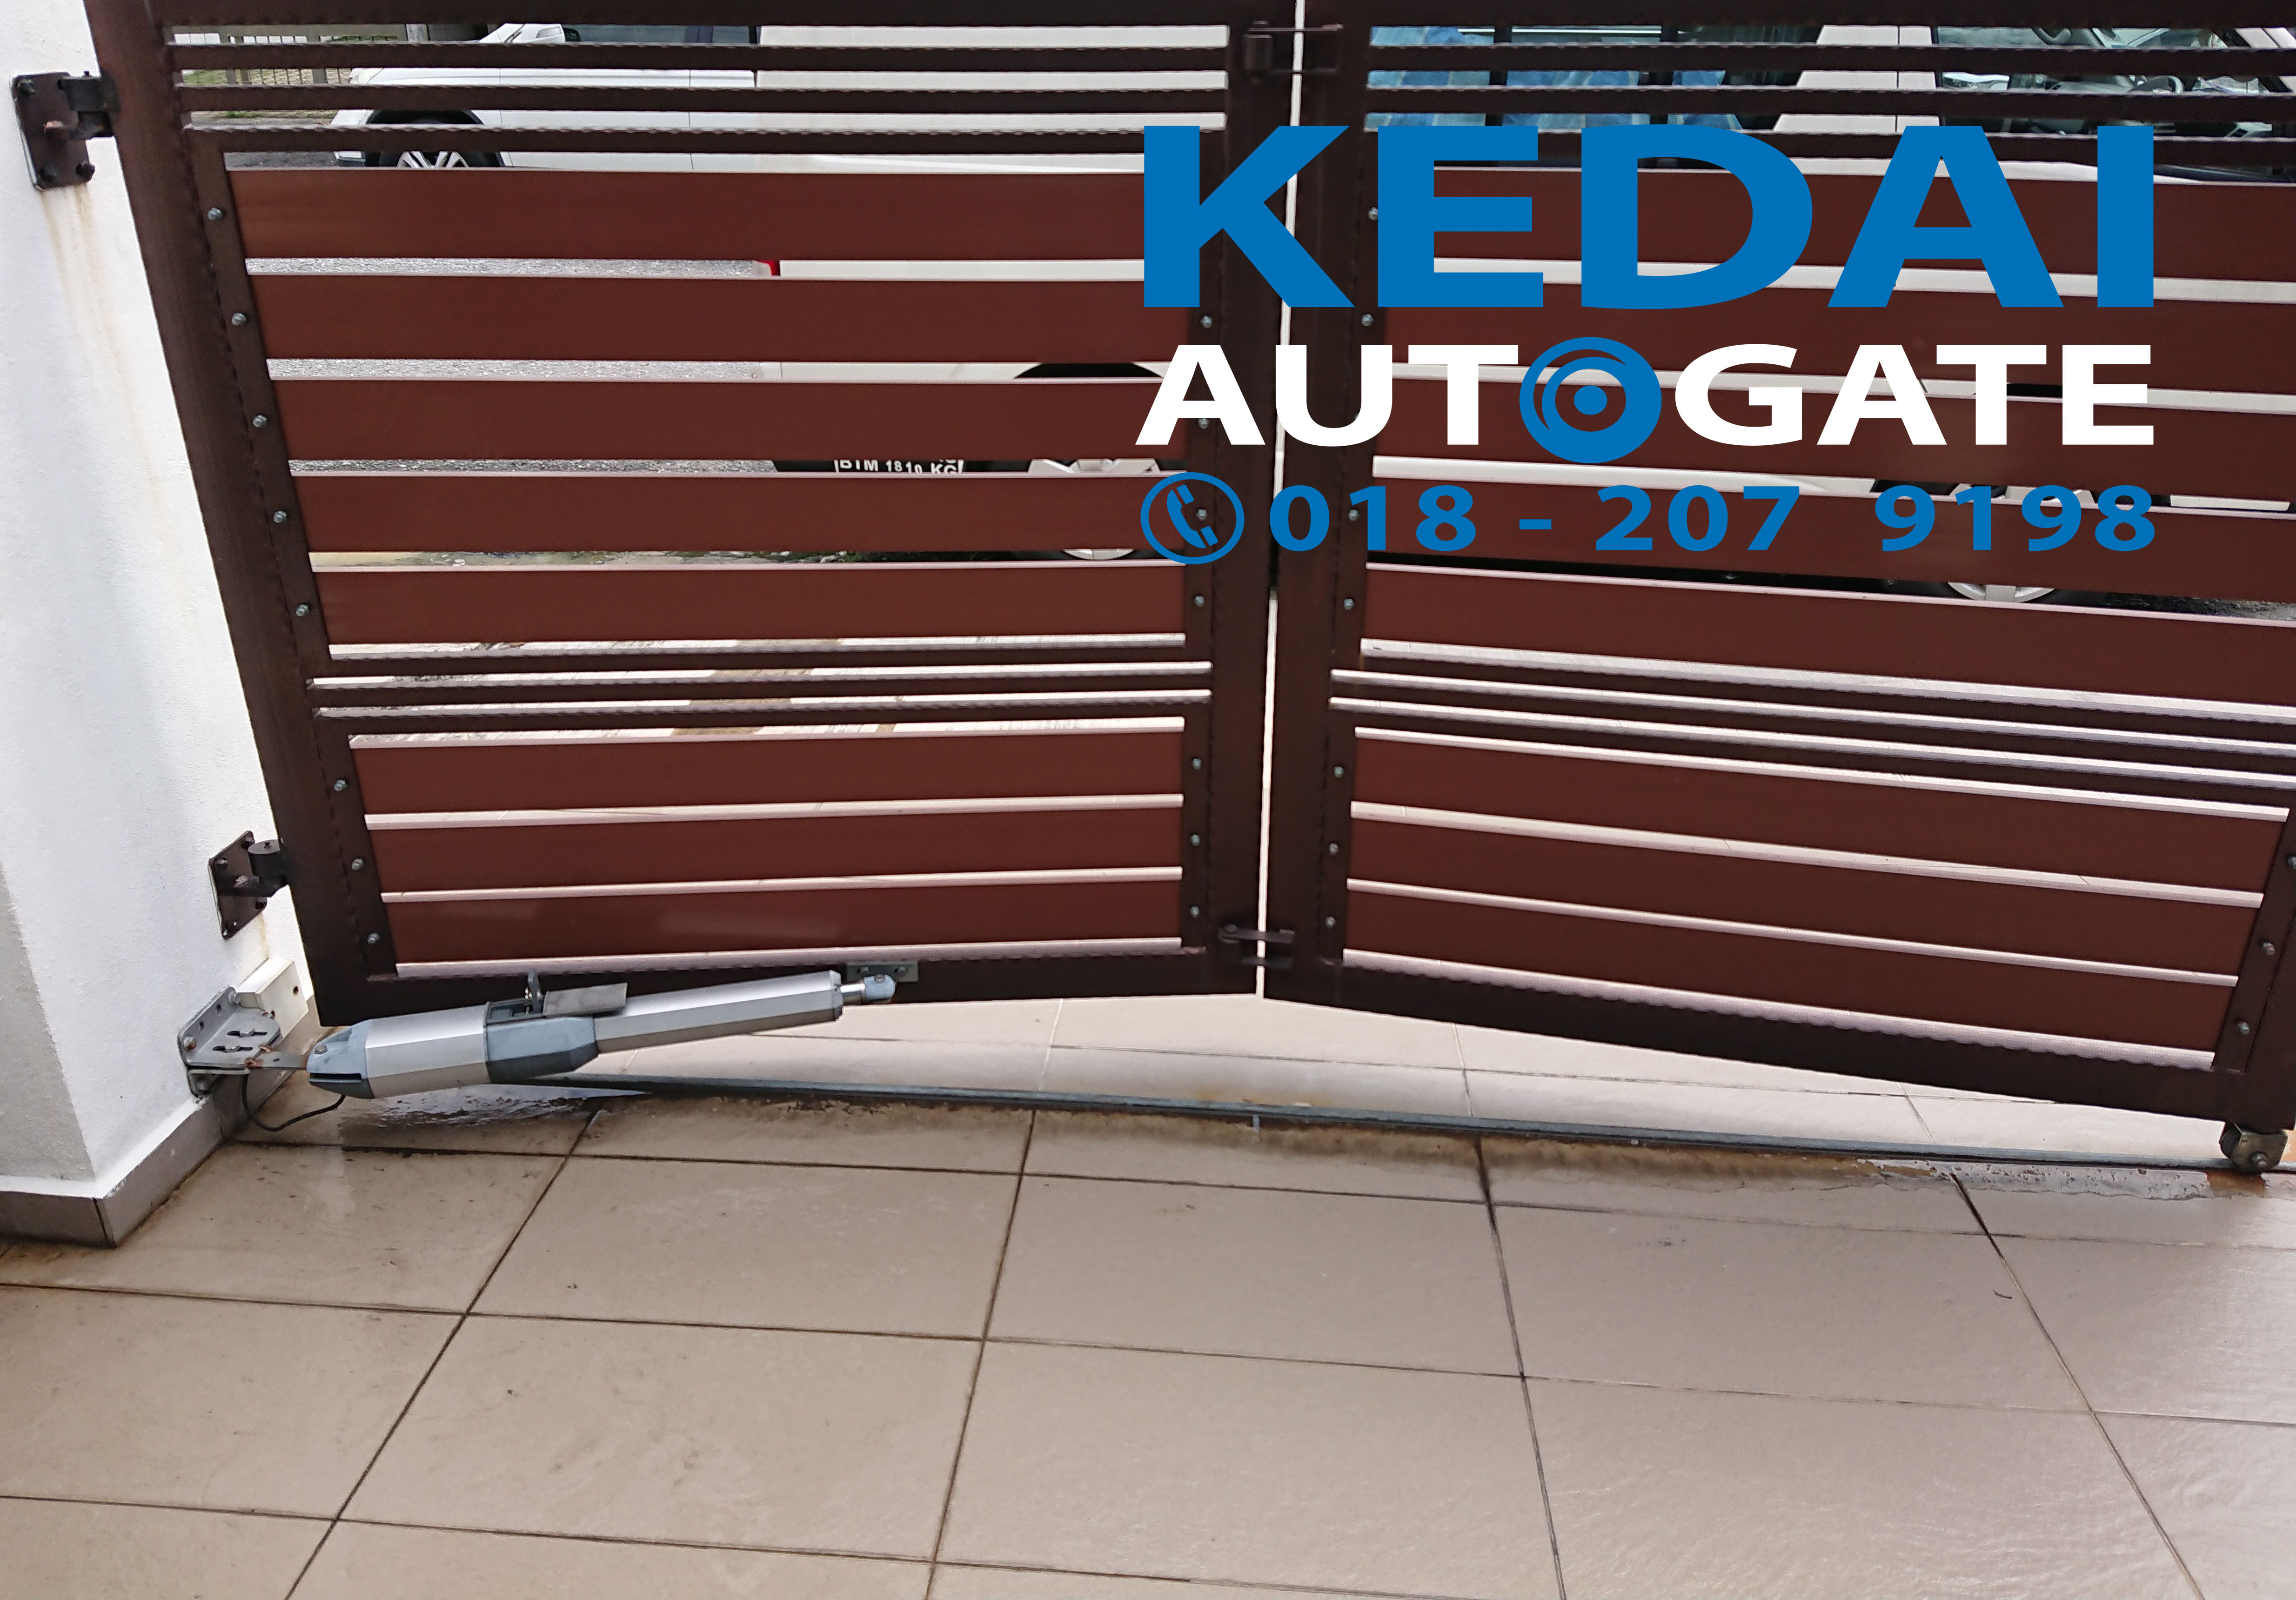 Auto Gate Service Repair Providers In Subang Jaya Replace Swing Arm Kedai Autogate